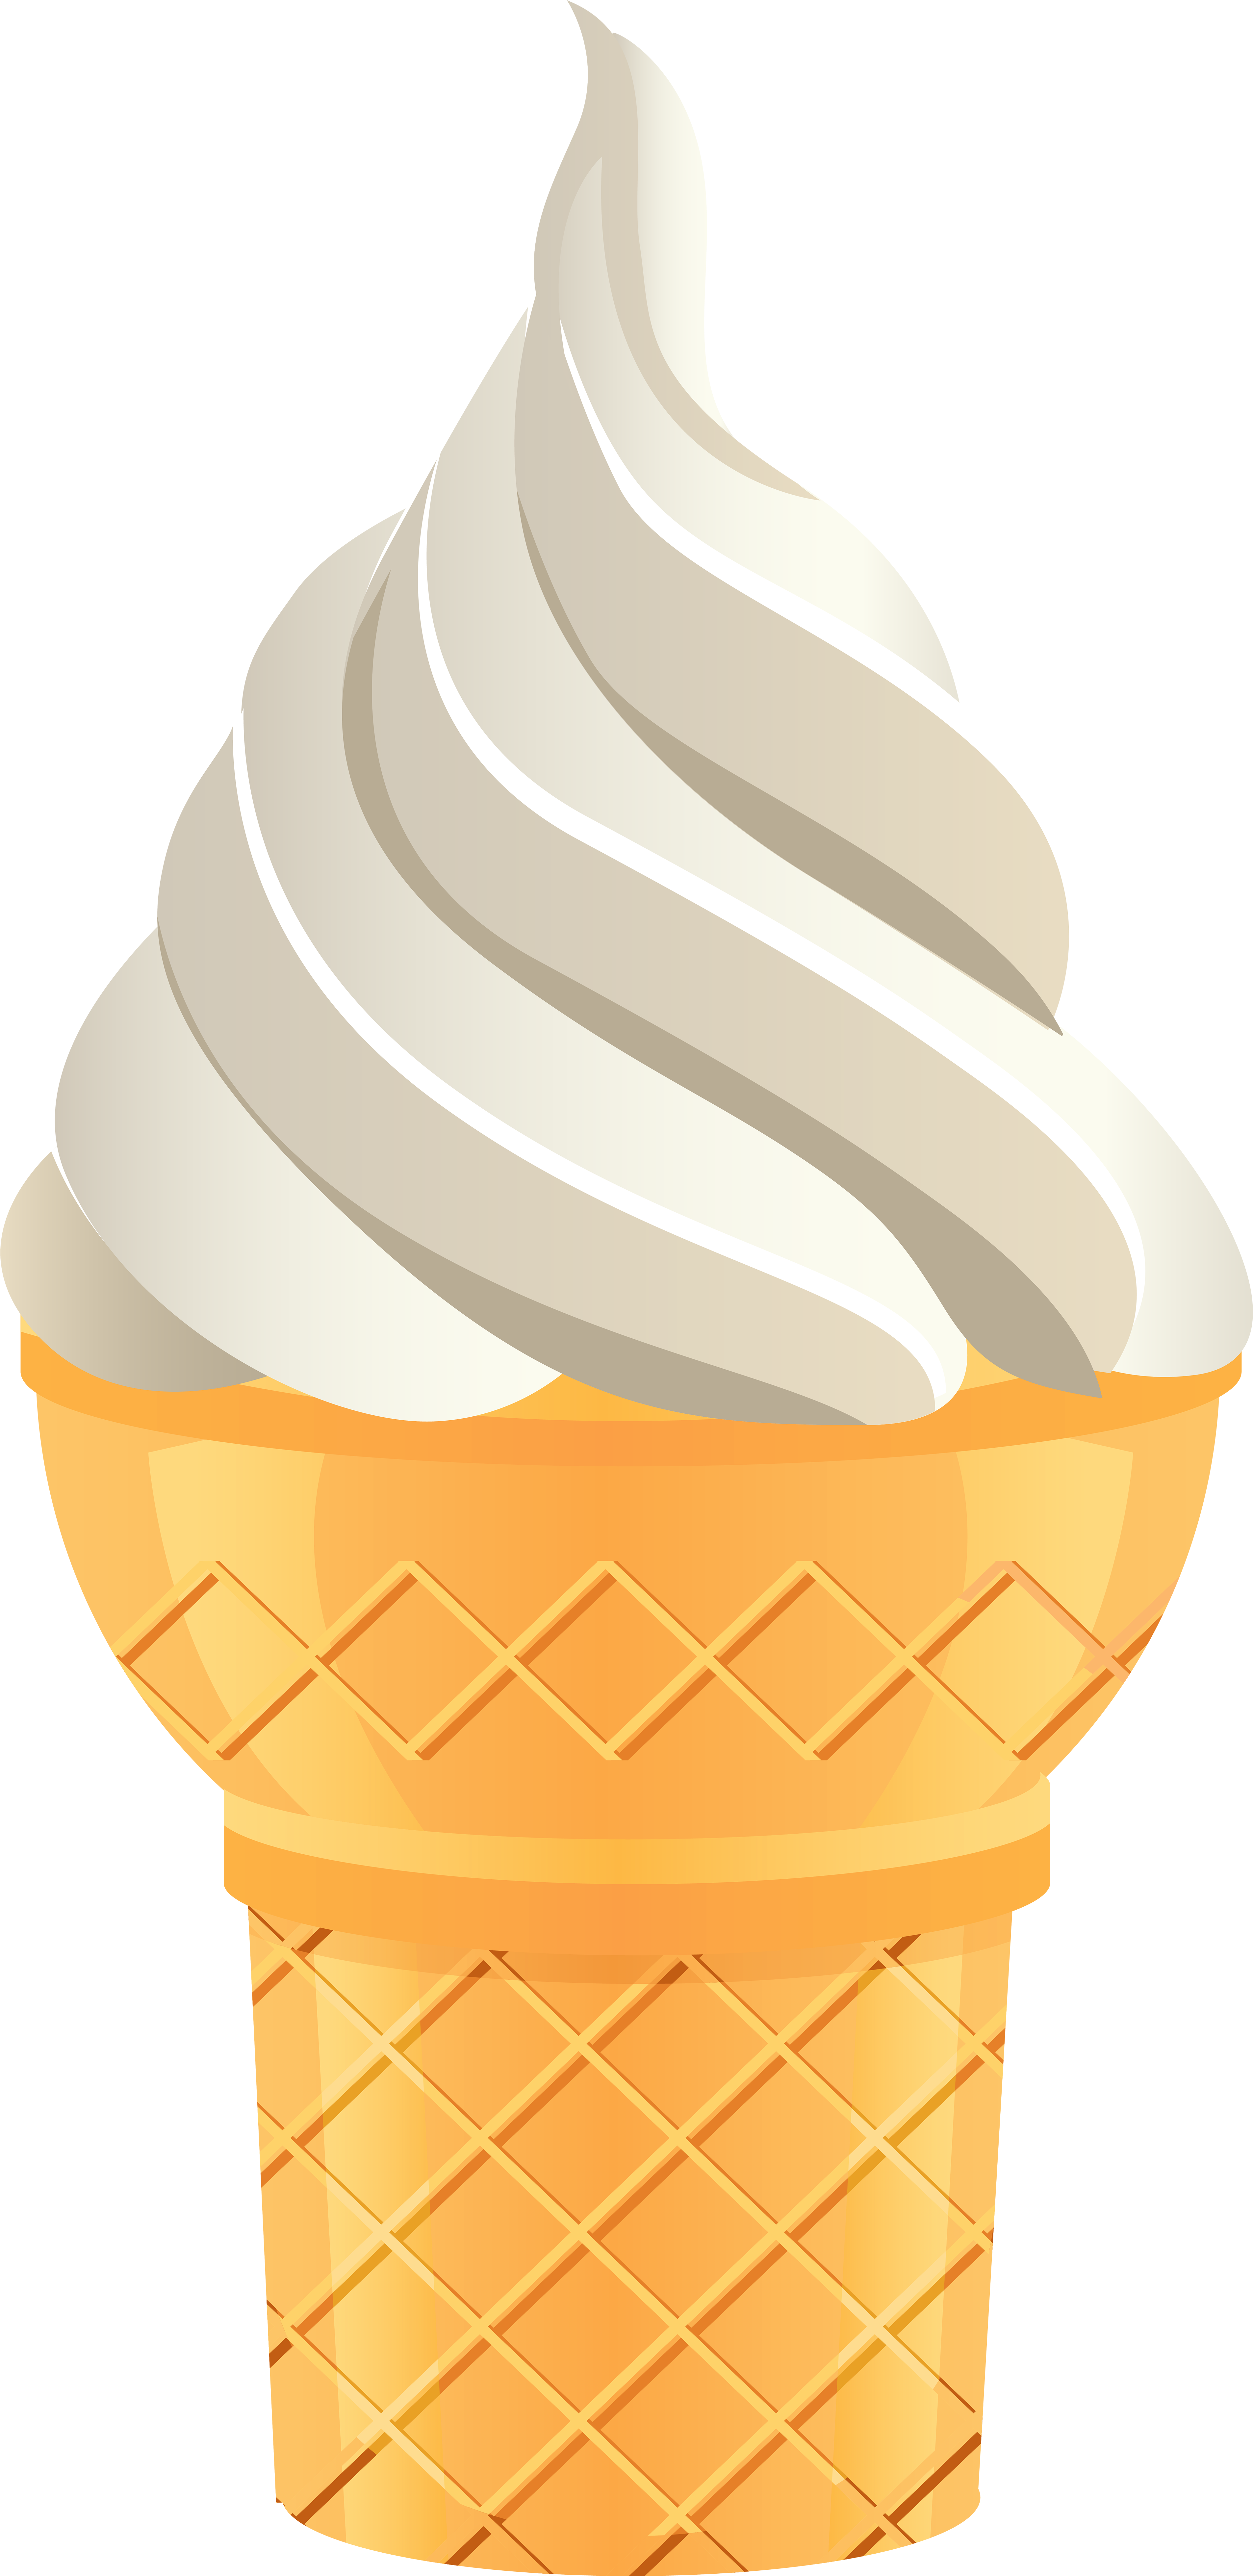 Vanilla Ice Cream Cone Png Transparent Clip Art Image - Vanilla Ice Cream.....